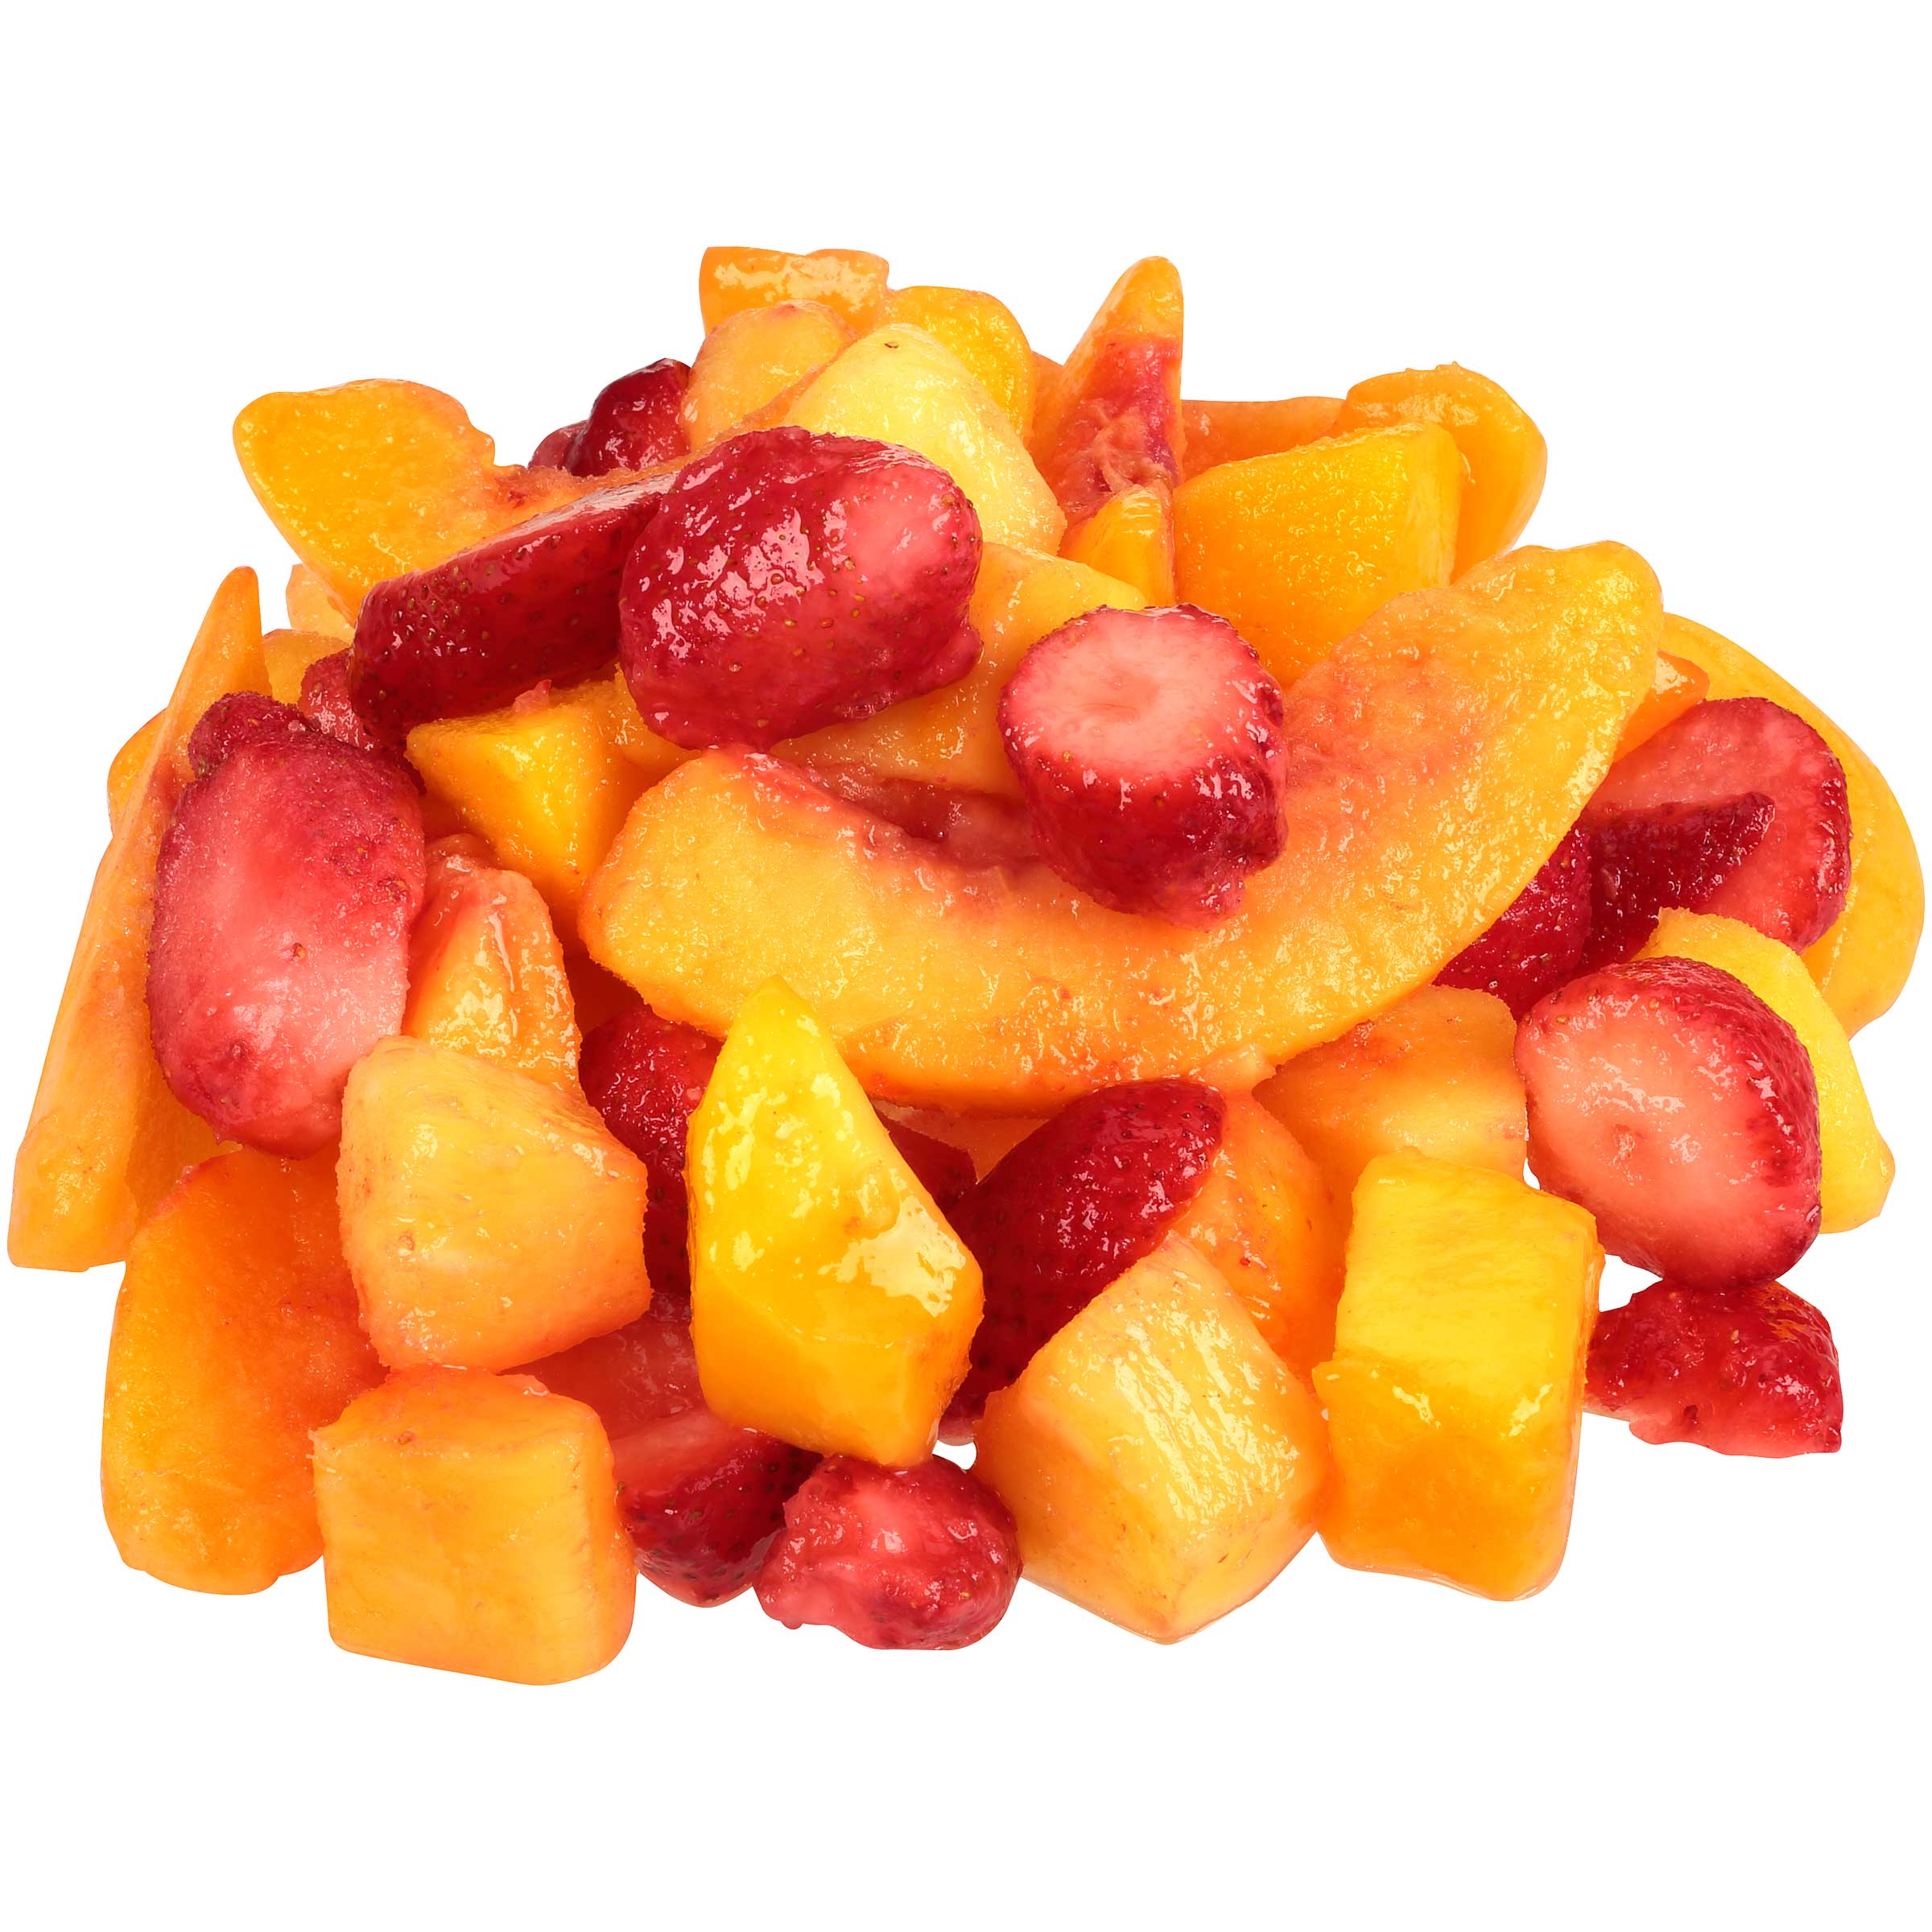 Dole Individual Quick Frozen Mixed Fruit, 5 Pound -- 2 per case.